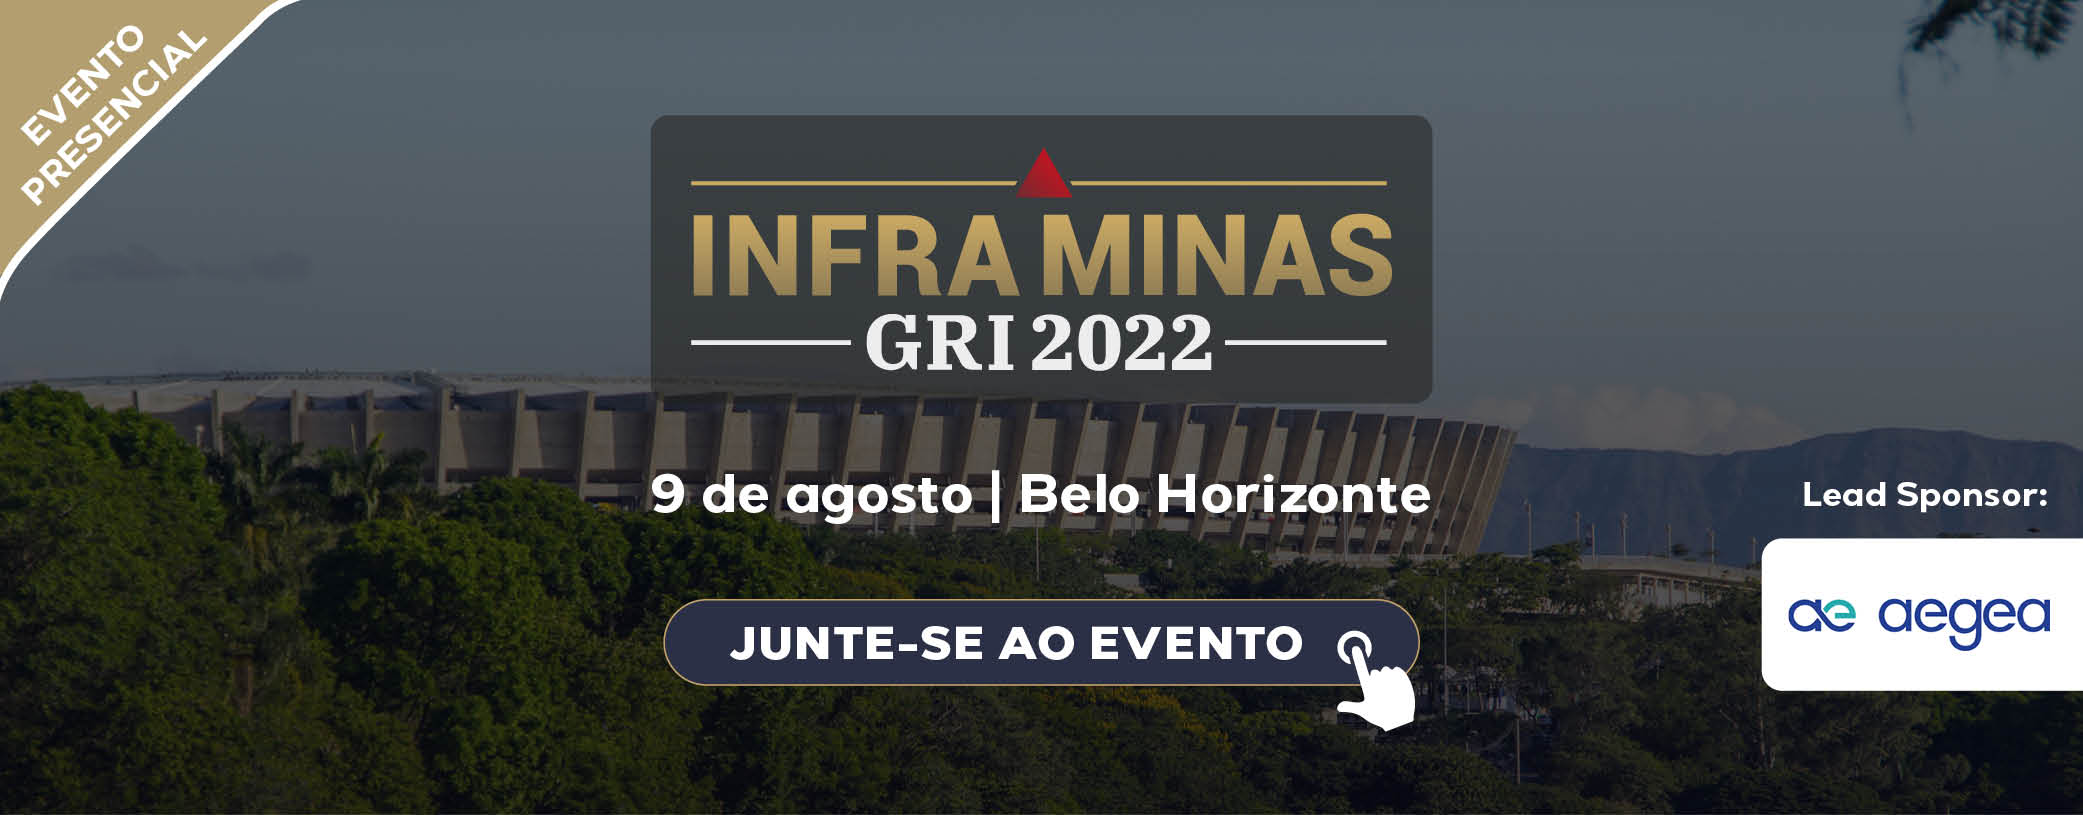 Infra Minas GRI 2022